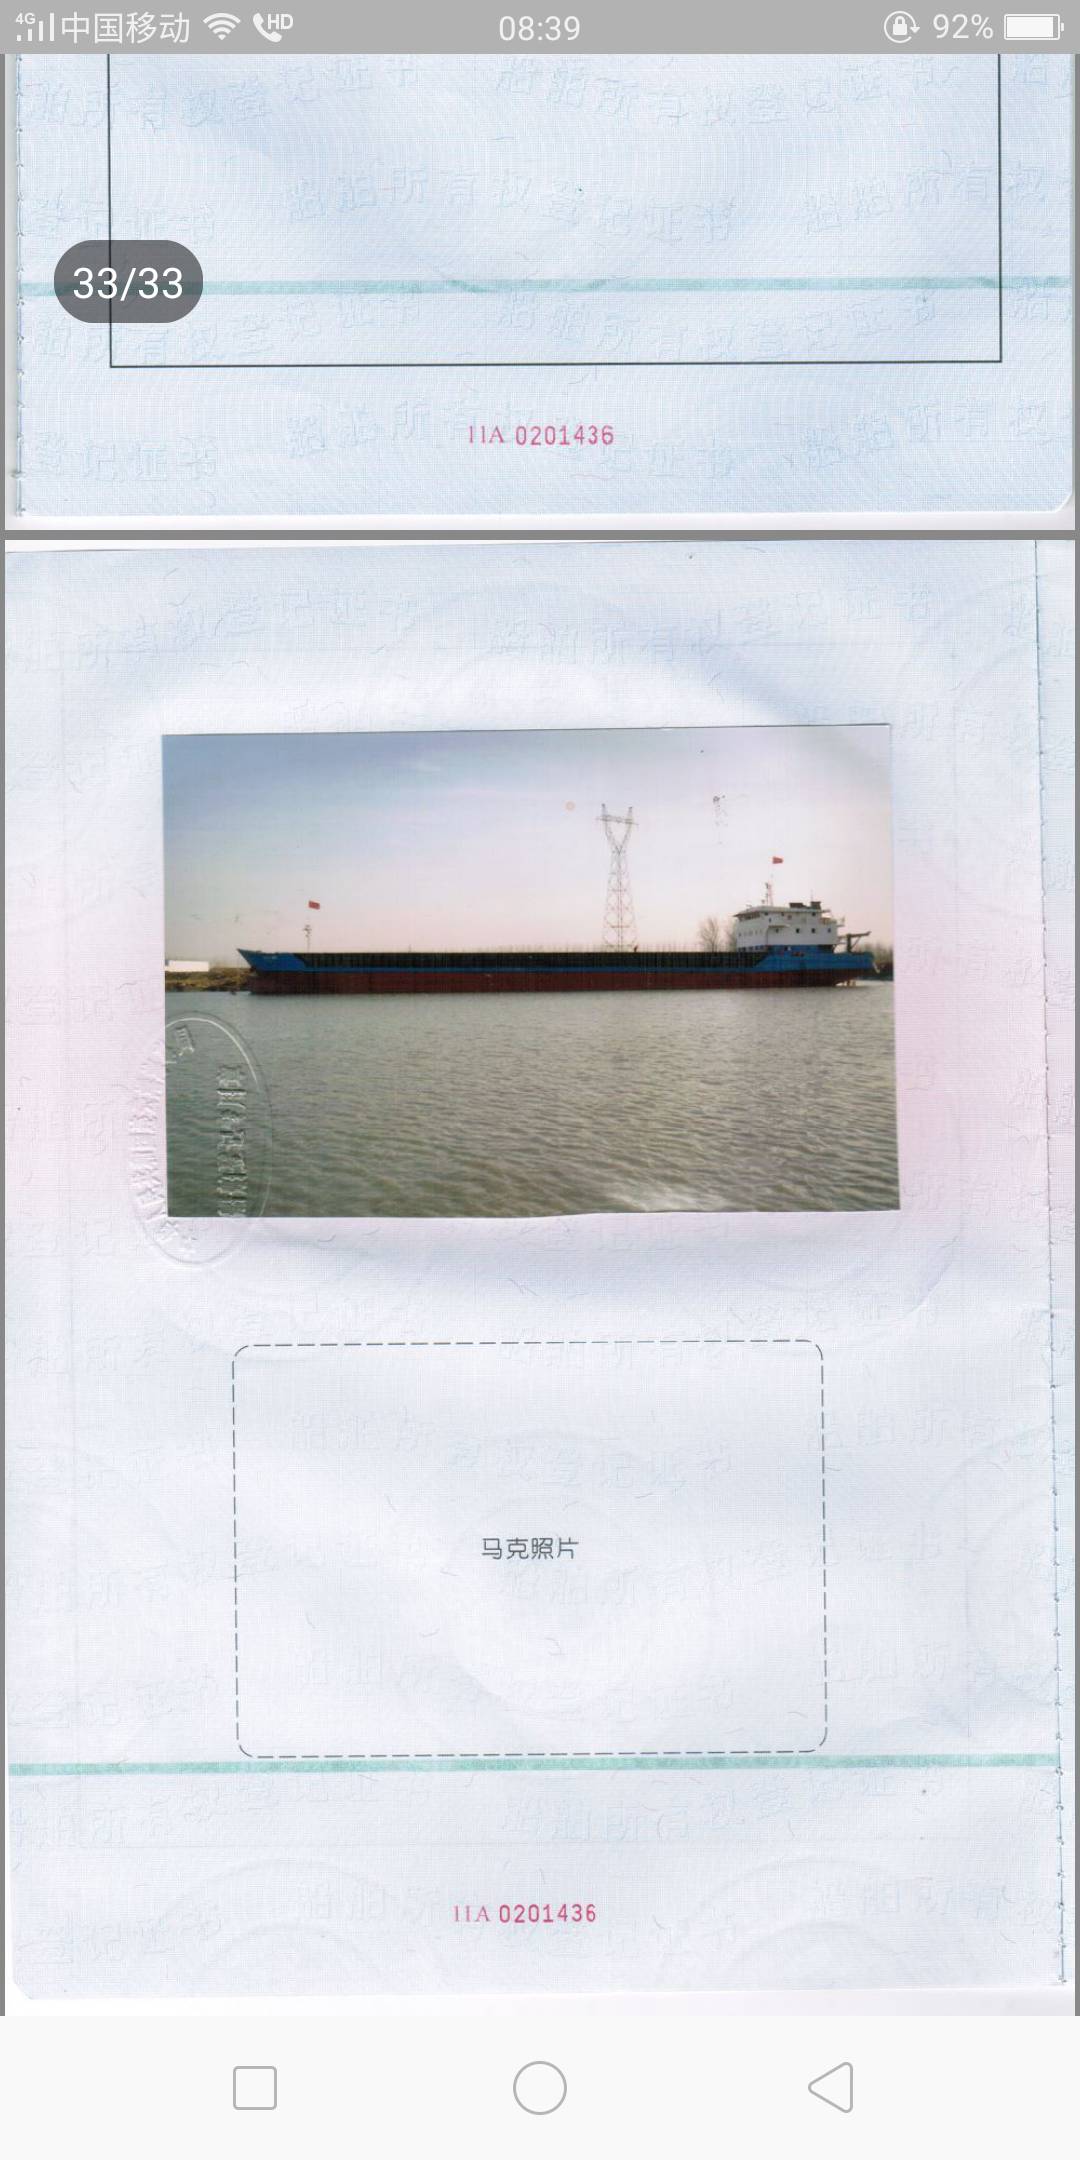 出售:5000吨甲板驳船